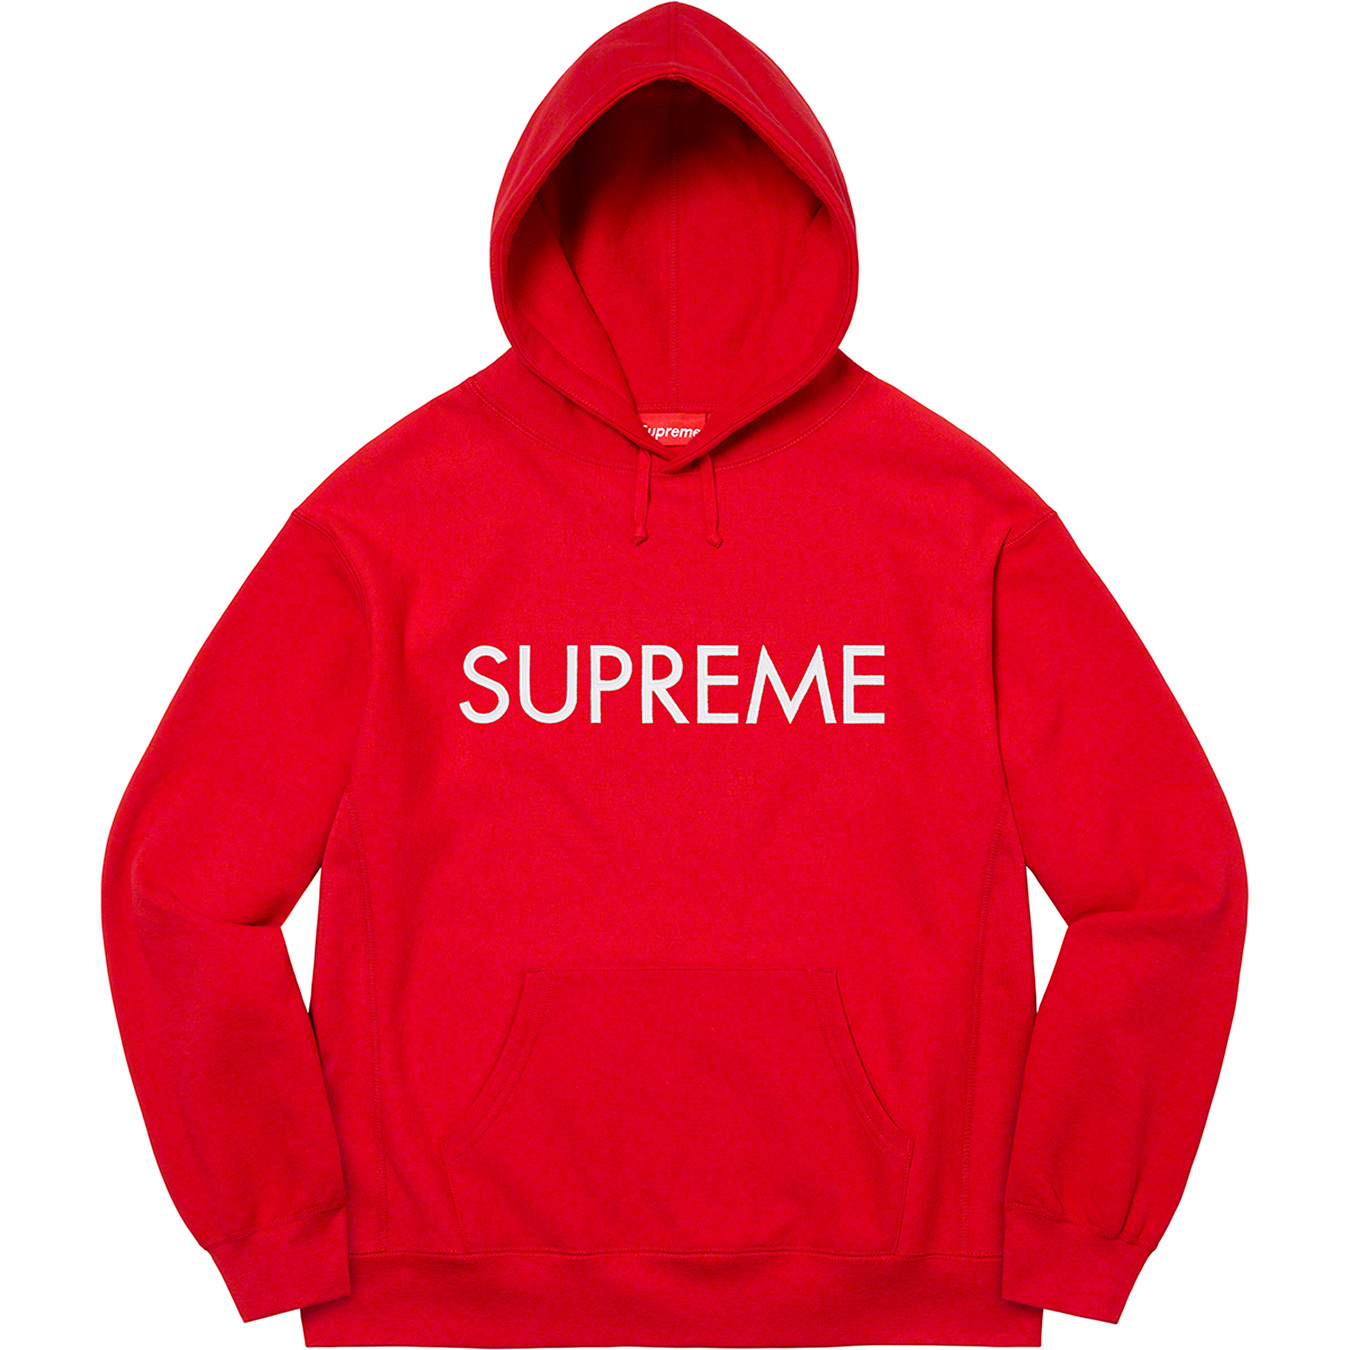 Supreme Capital Hooded Sweatshirt